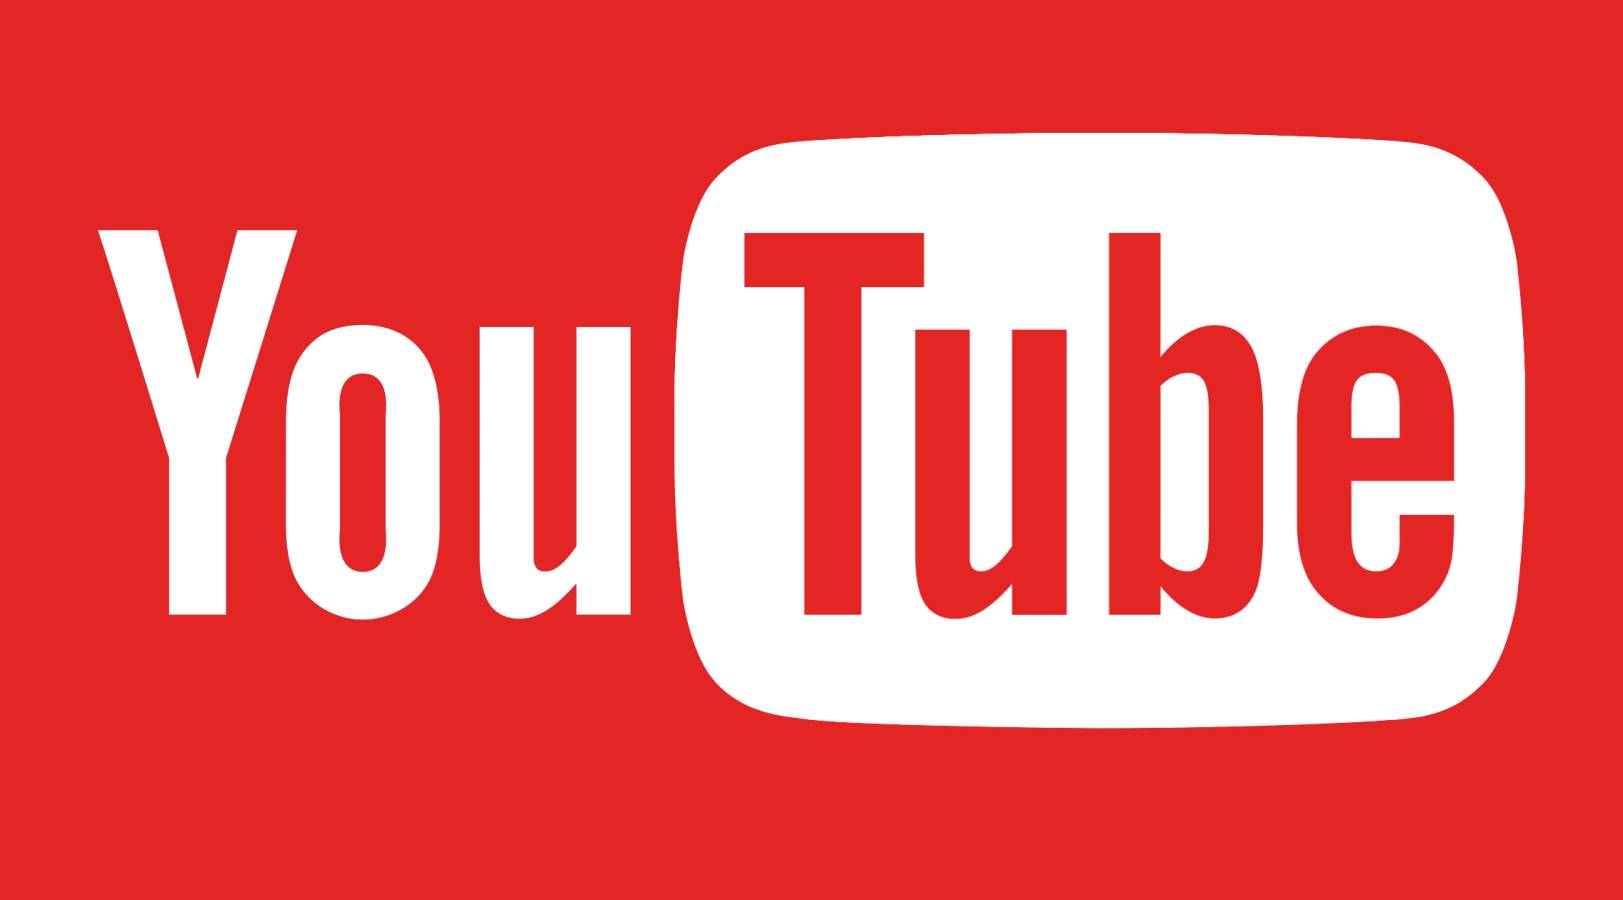 YouTube Update a fost Lansata, ce Noutati sunt Oferite Acum